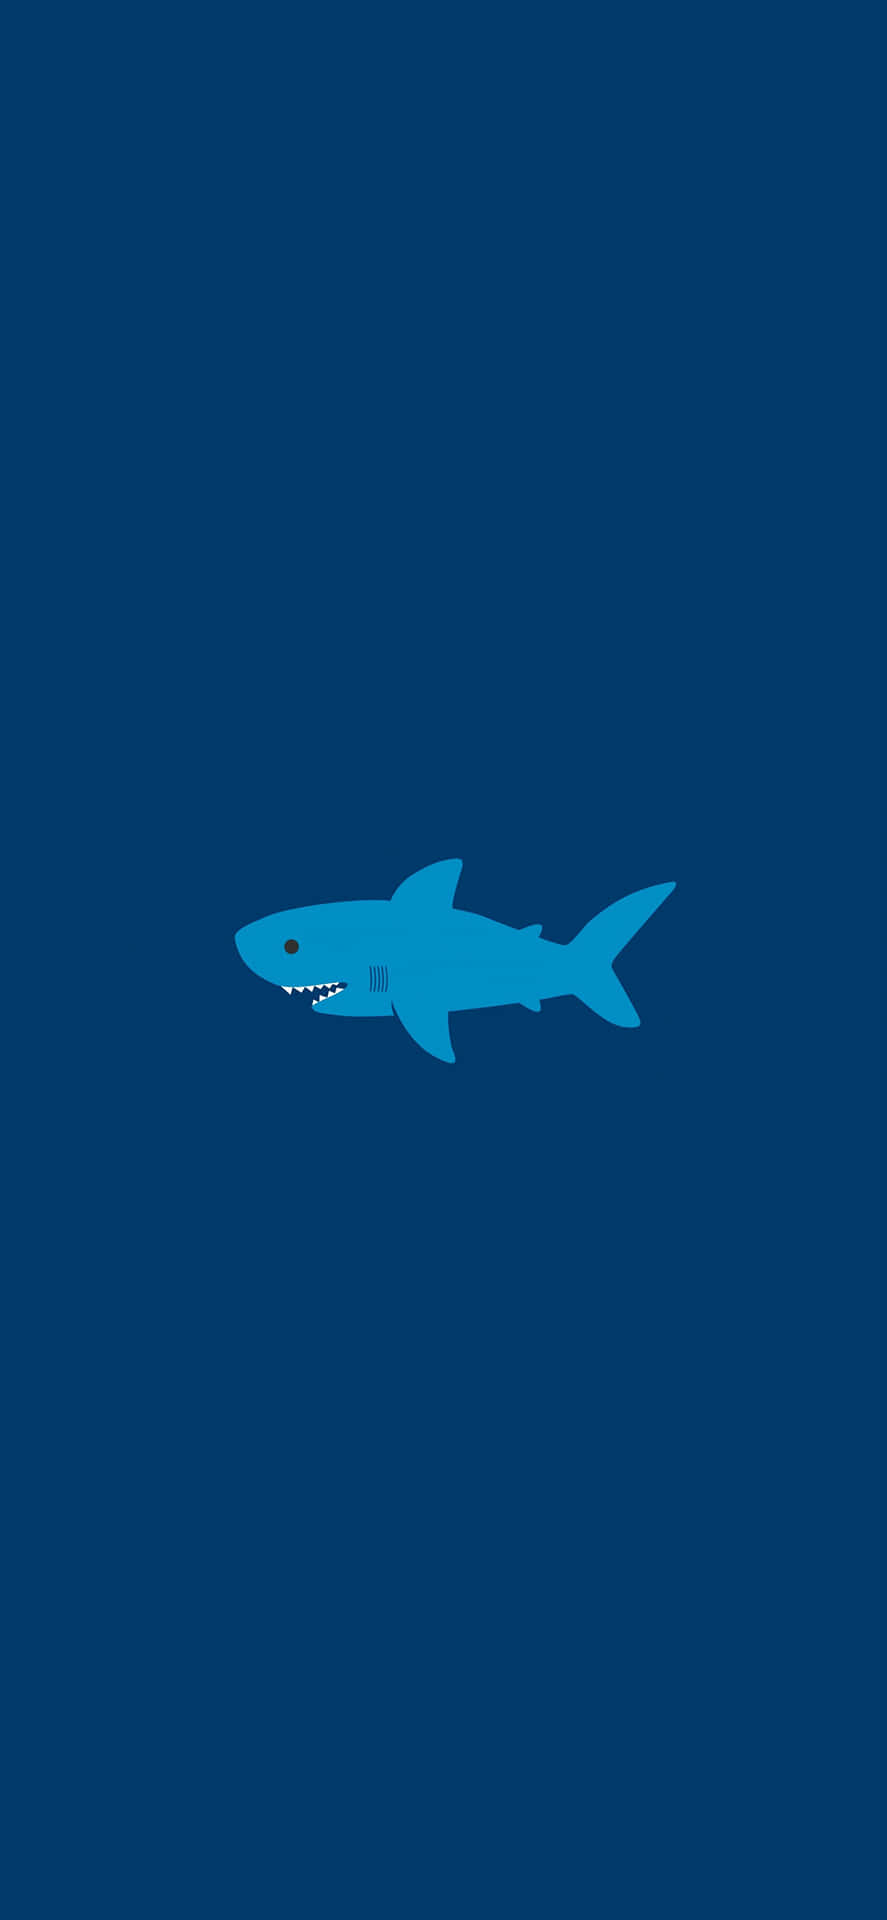 Zeigensie Ihren Stil Und Heben Sie Sich Mit Diesem Fantastischen Hai-iphone Hervor! Wallpaper